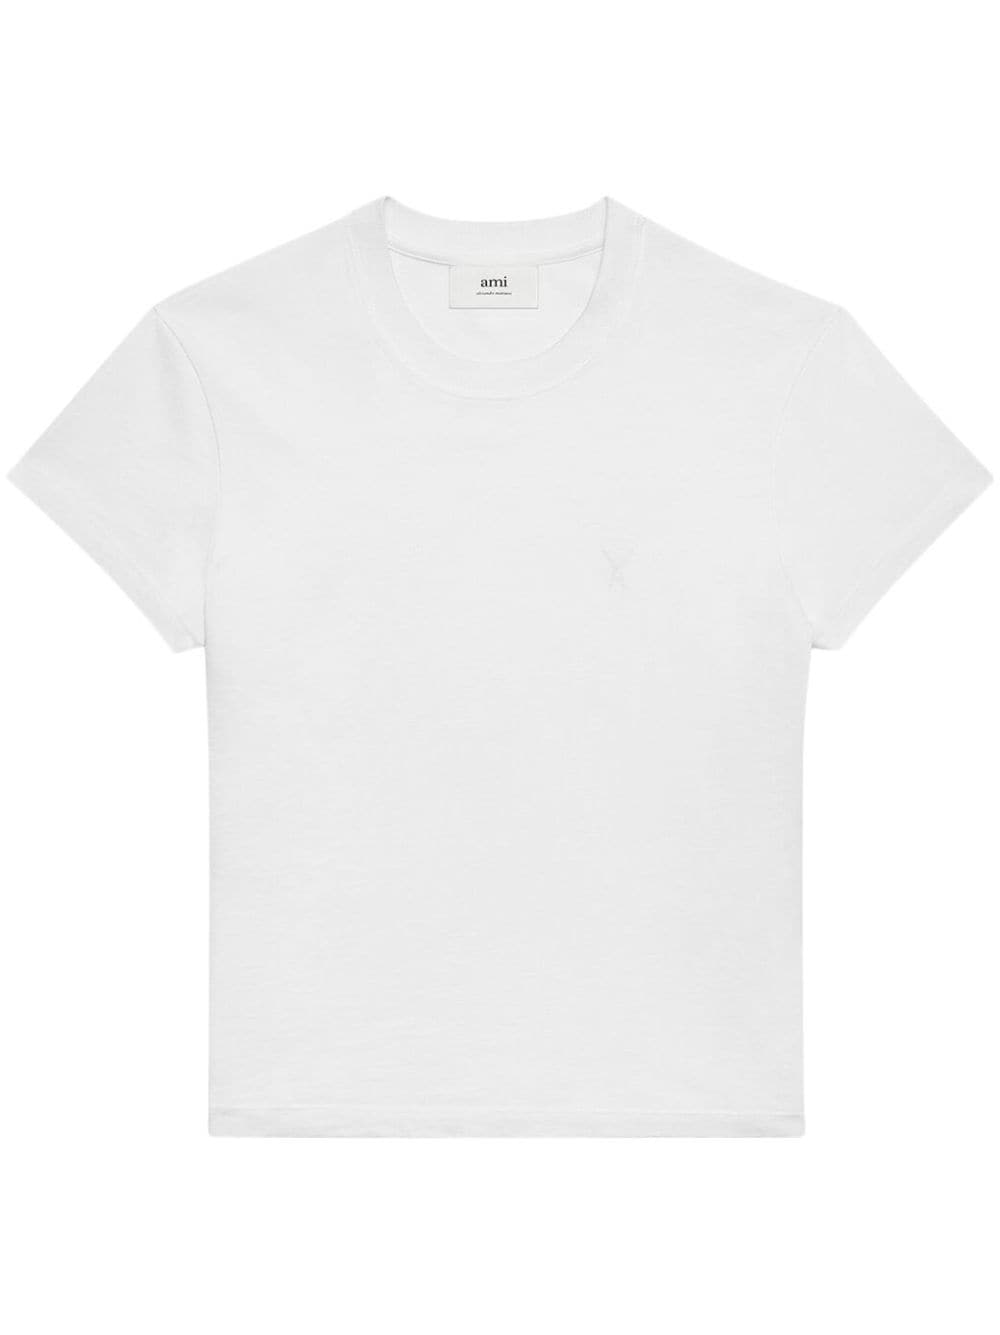 AMI Paris - T-Shirt blanc Coeur brodé - Lothaire